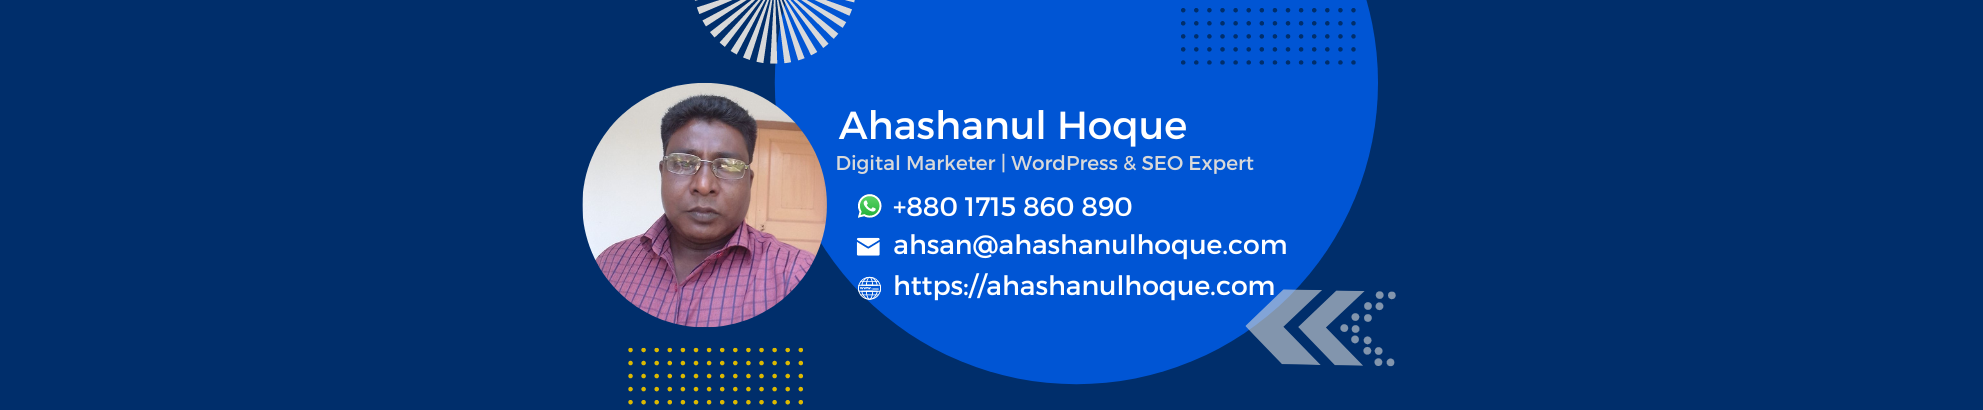 Ahashanul Hoque's profile banner